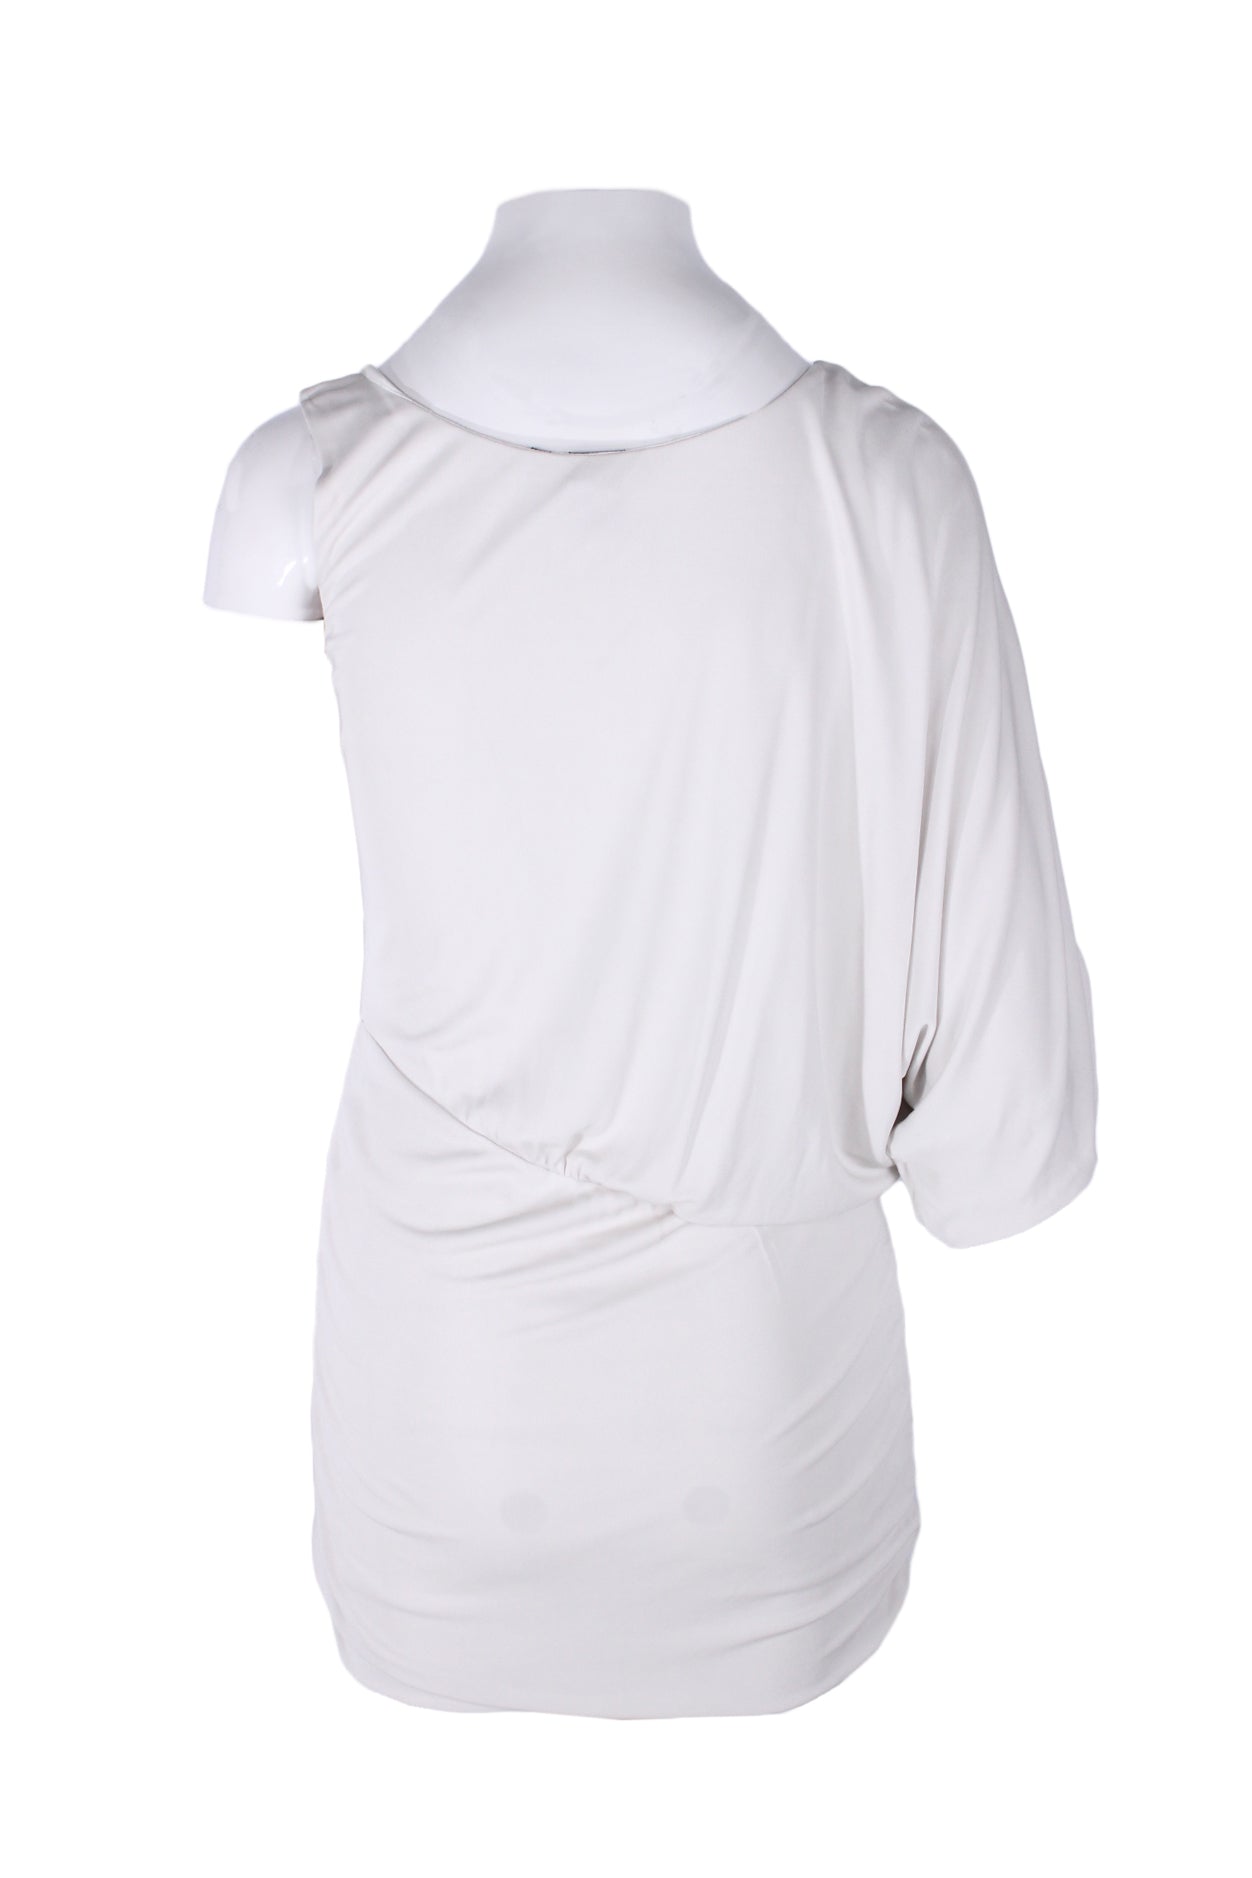 back of white dress.  